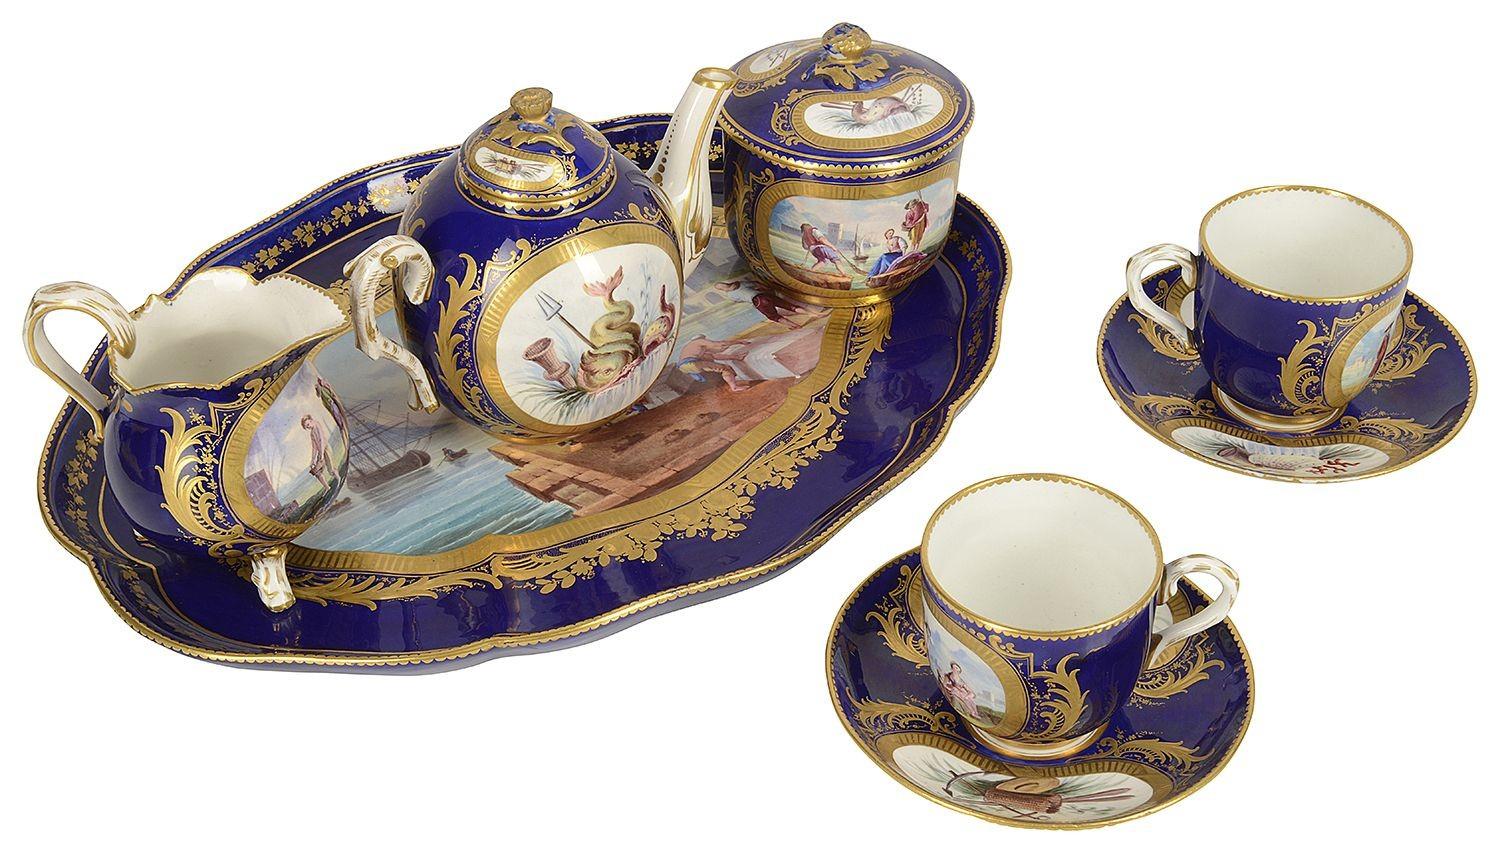 Eine sehr gute Qualität des späten 19. Jahrhunderts Französisch 'Sevres' Stil Porzellan Kabarett gesetzt. Bestehend aus einer Teekanne, einer Zuckerdose, einem Milchkännchen und zwei Tassen mit Untertassen. Jedes mit dem klassischen kobaltblauen